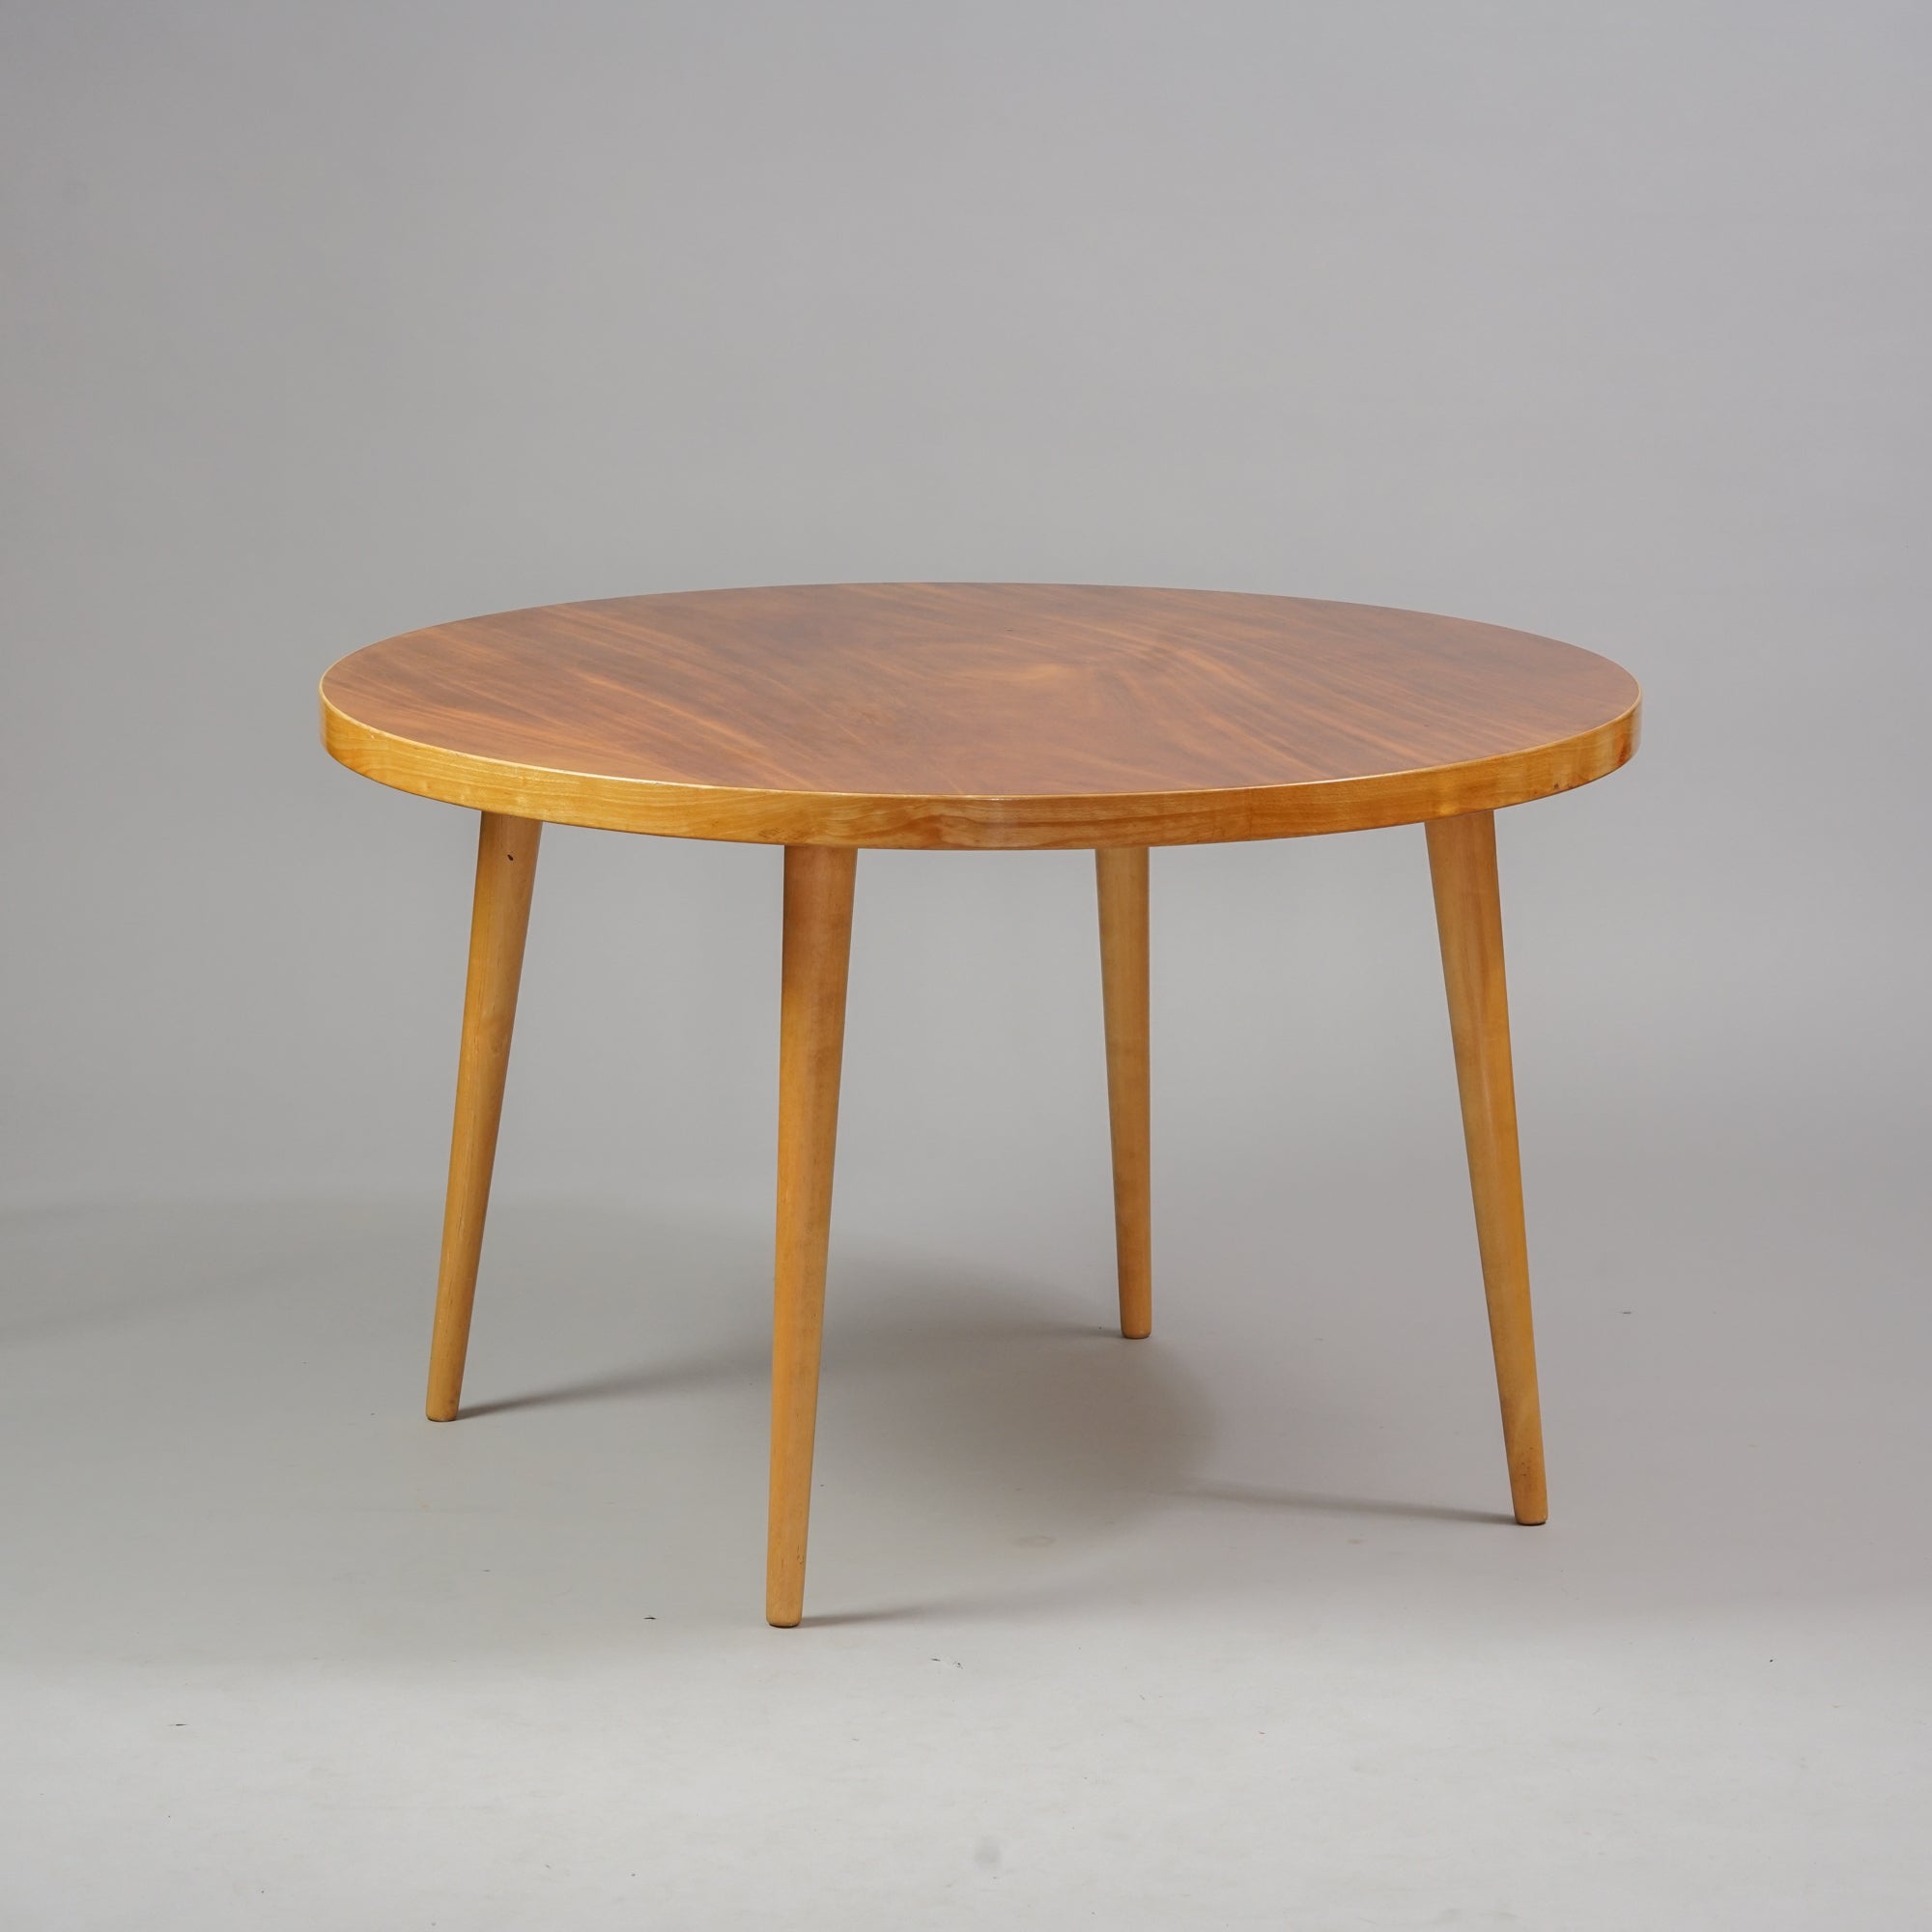 Puusta tehty pyöreä pöytä, jossa neljä jalkaa. 